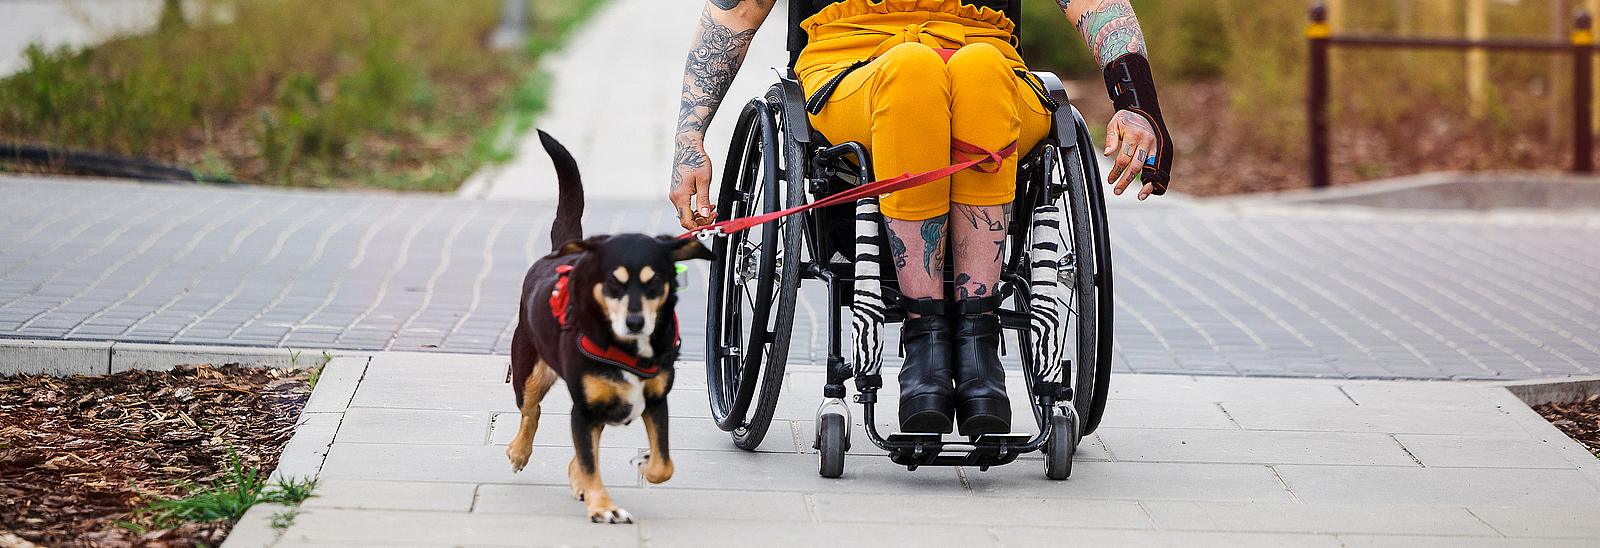 Eine Frau sitzt im Rollstuhl, neben ihr läuft ein kleiner Hund.